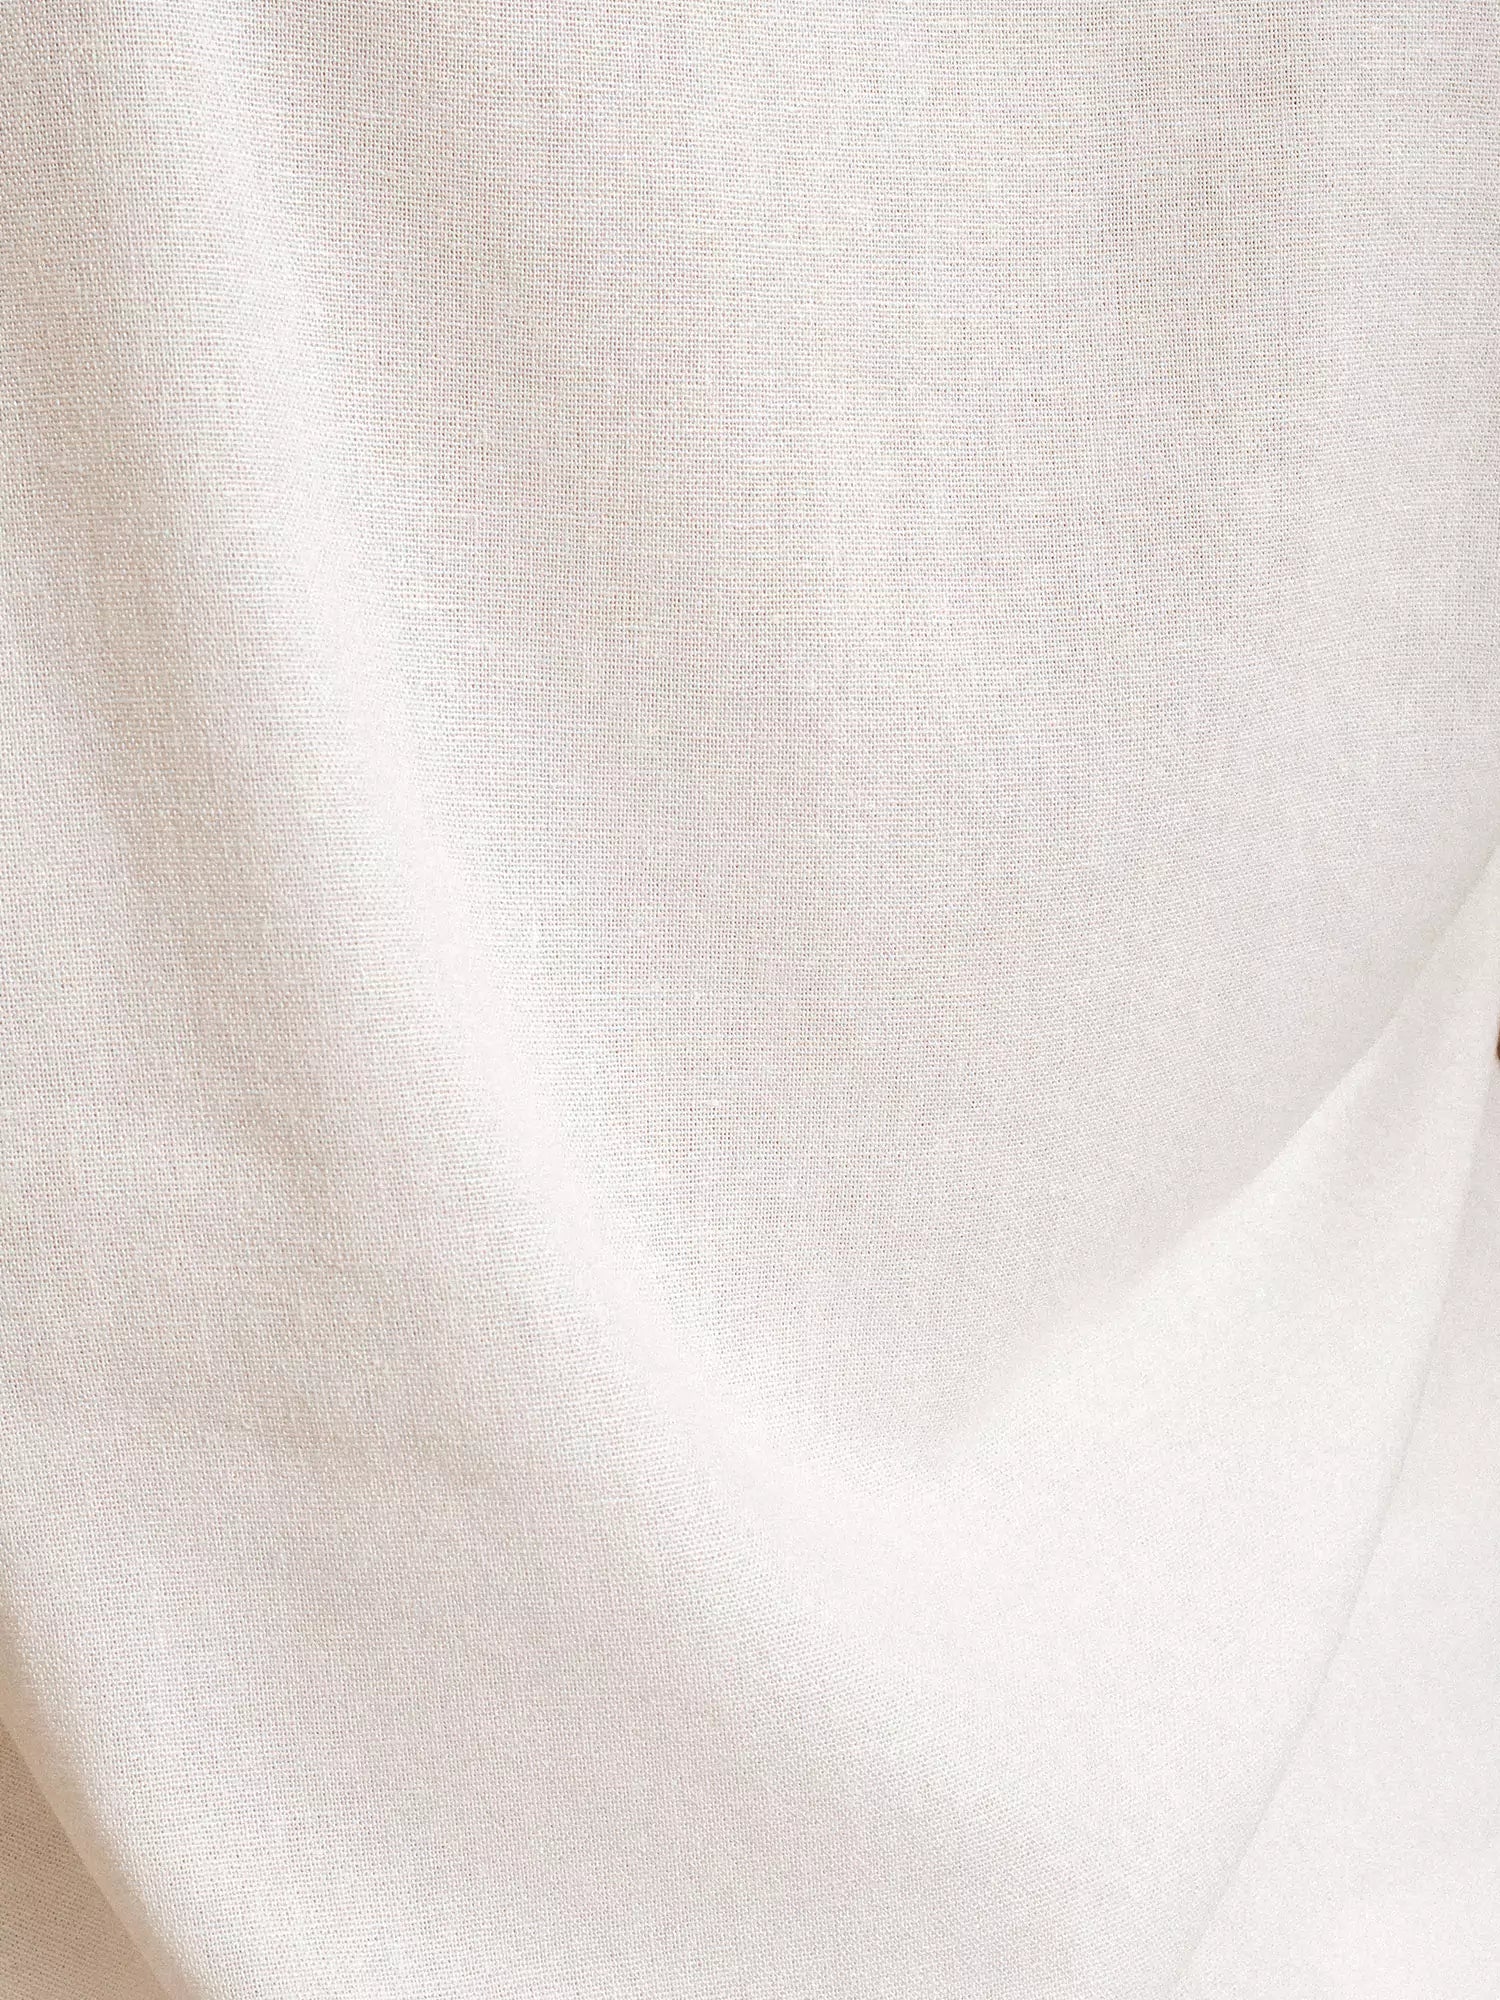 Regata de Linho e Viscose FSC™ Branca Off White. Compre online moda sustentável e atemporal na Minimadeia. Roupas femininas estilosas, básicas e sustentáveis. Foto produto 12